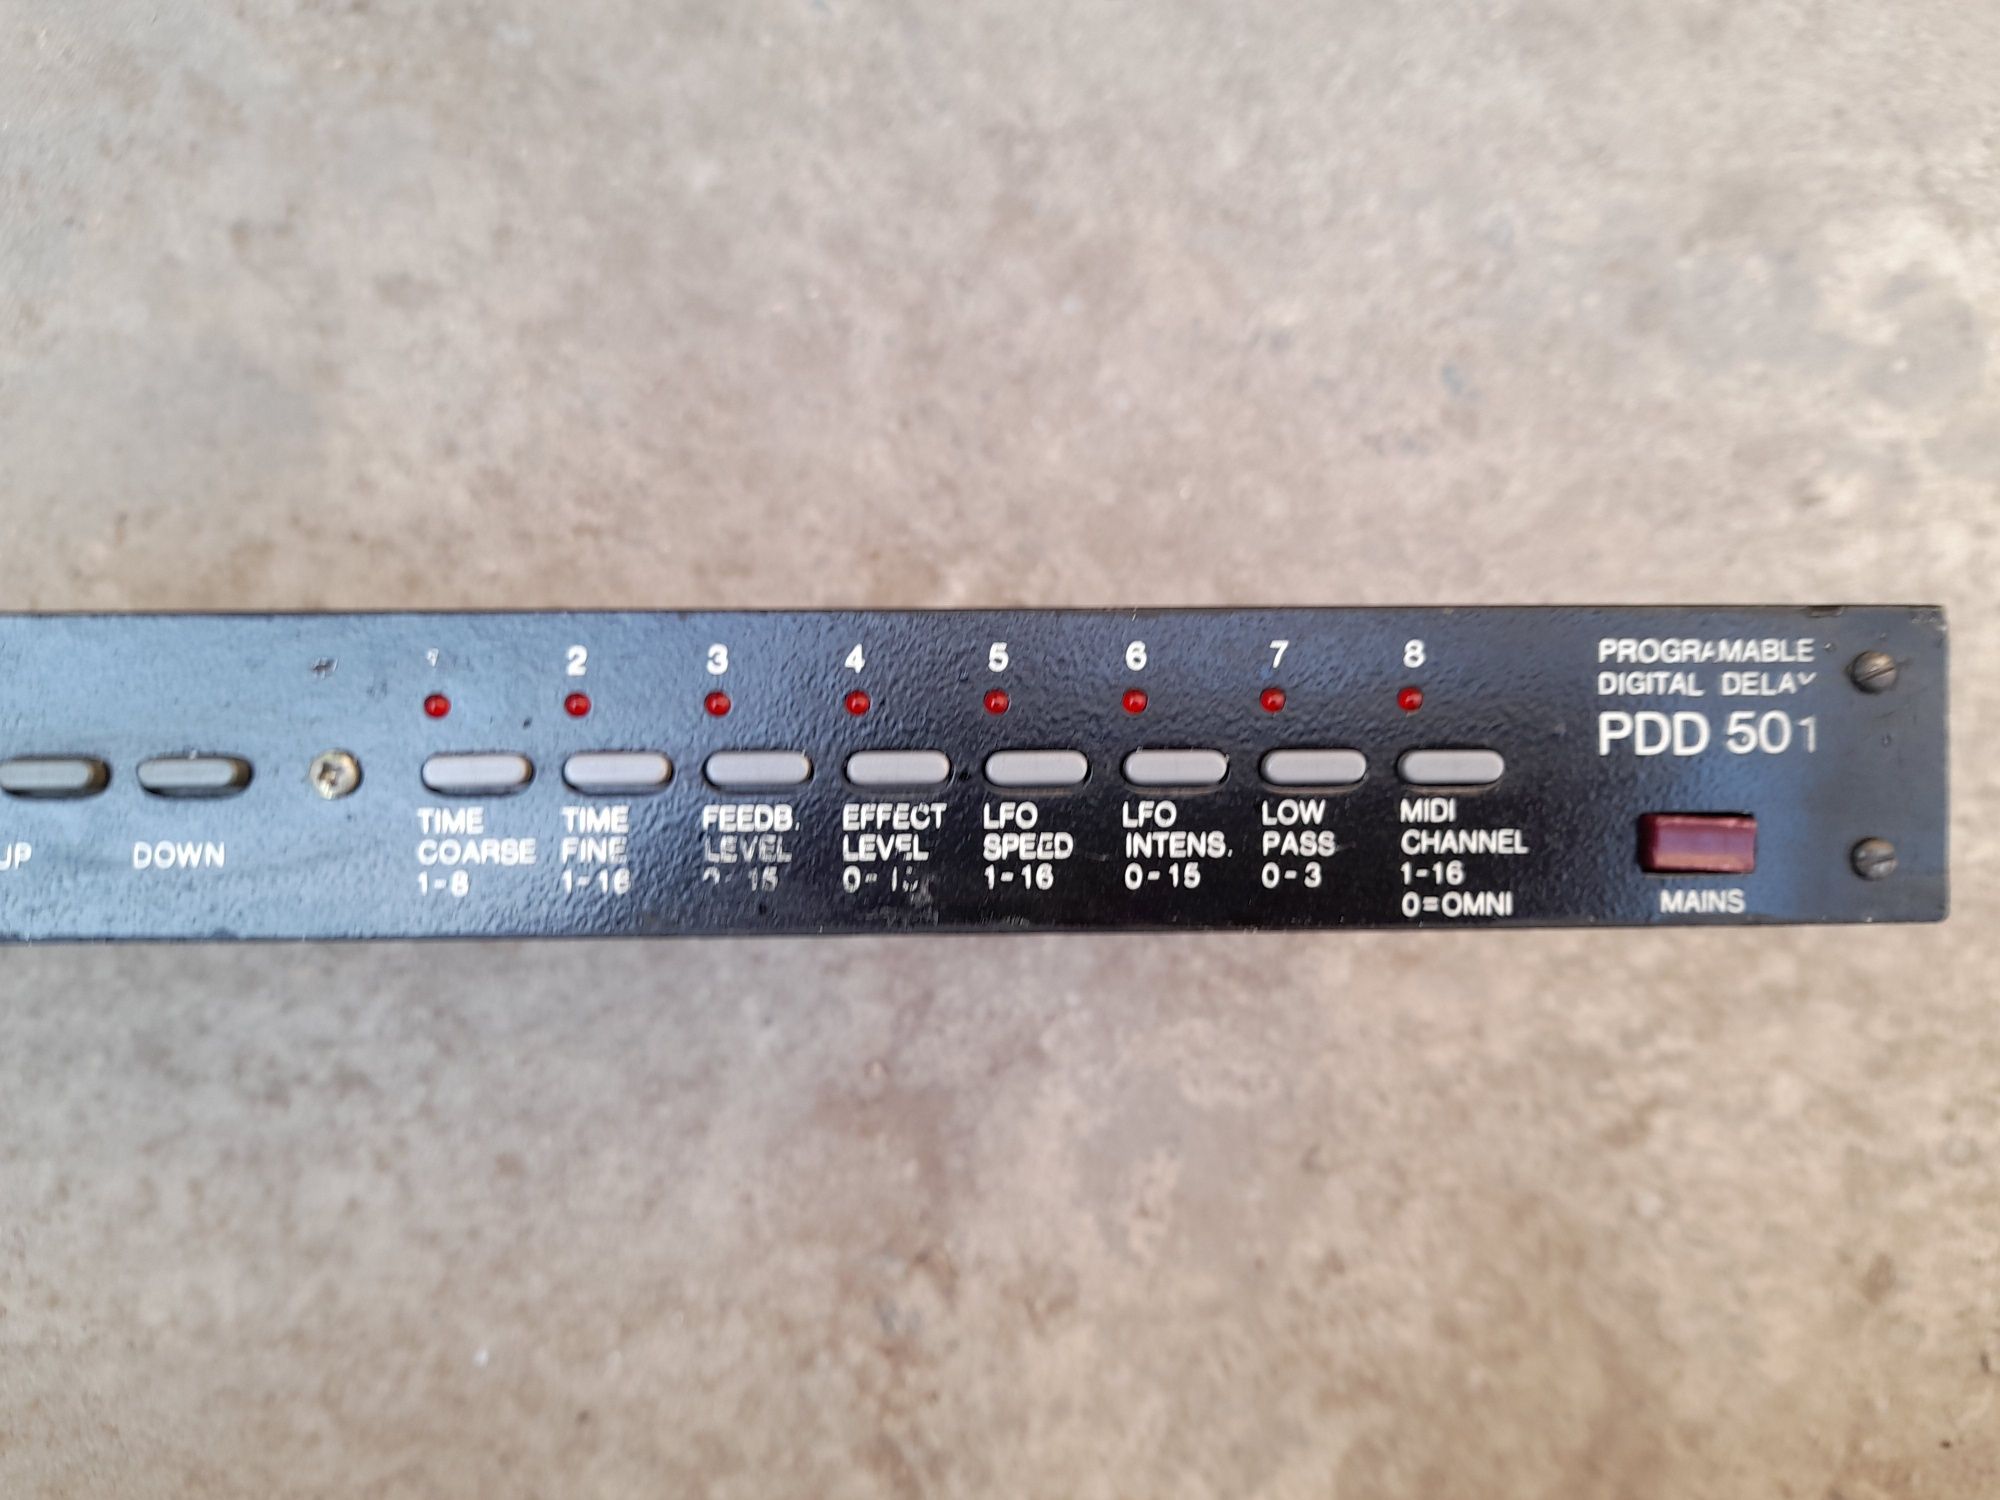 PDD 501 Vermona procesor efecte voce ( digital delay )